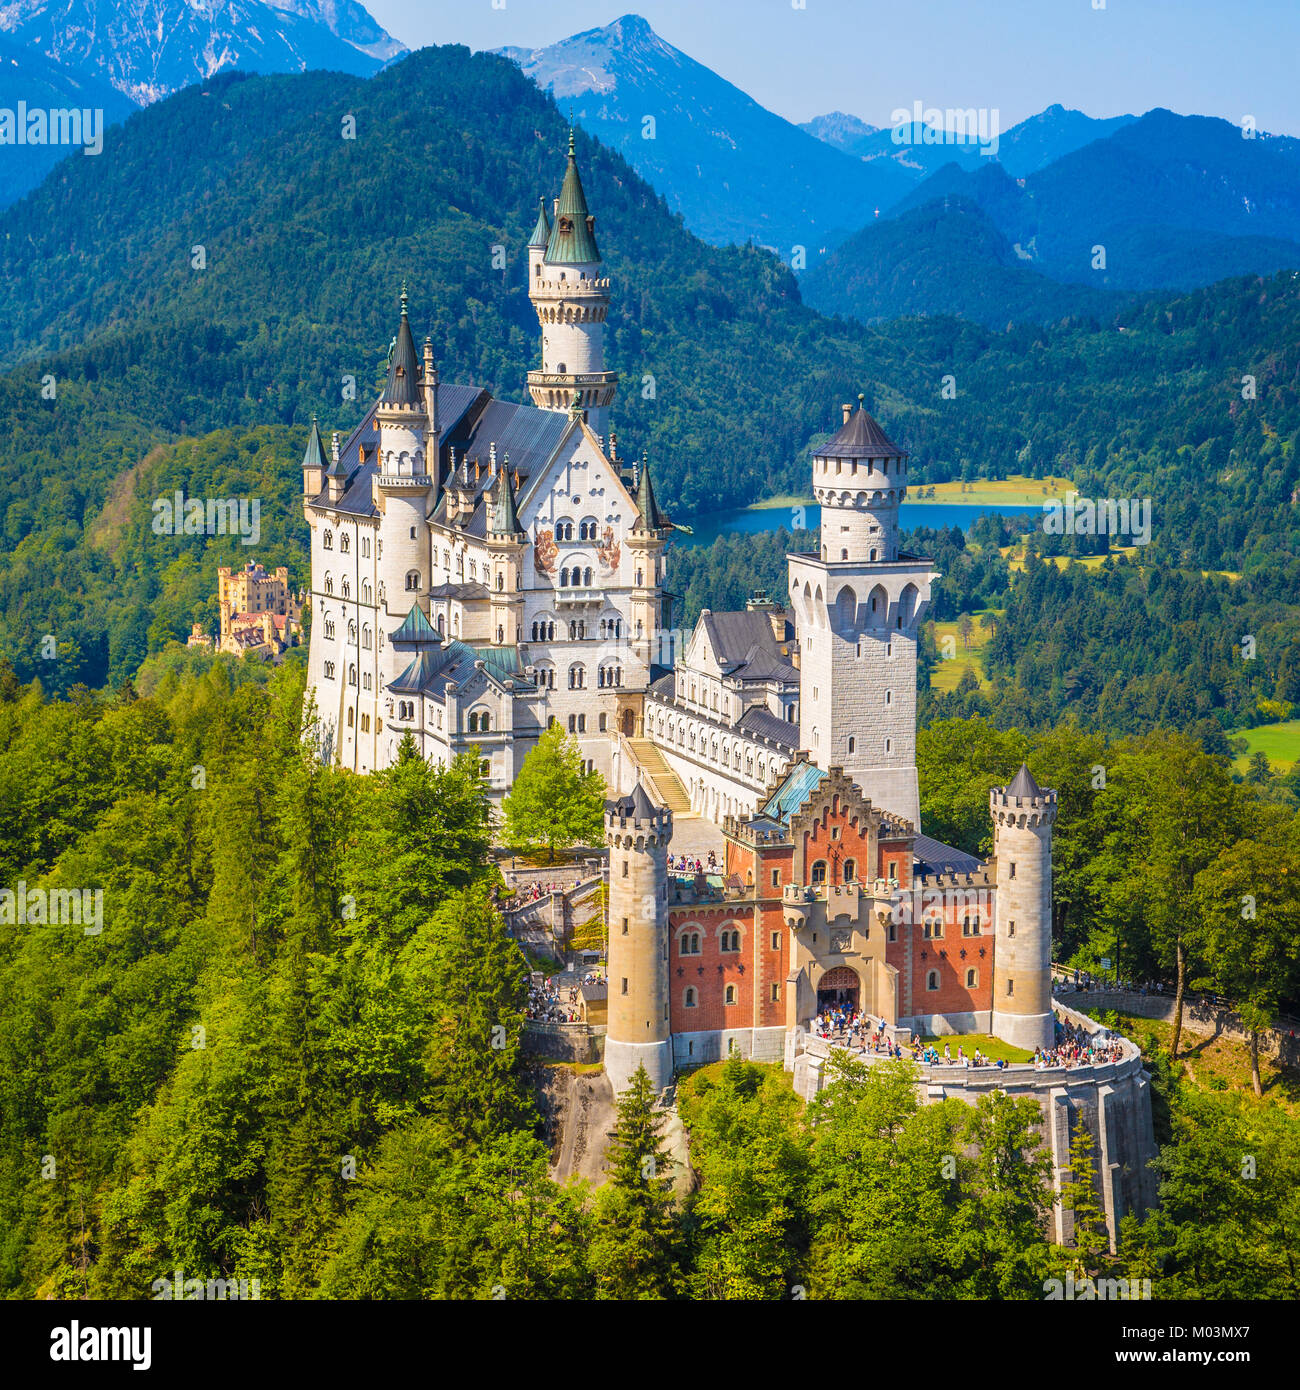 Bellissima vista del famoso castello di Neuschwanstein, il diciannovesimo secolo Revival Romanico Palace costruito per il re Ludwig II su una rupe robusto, wit Foto Stock